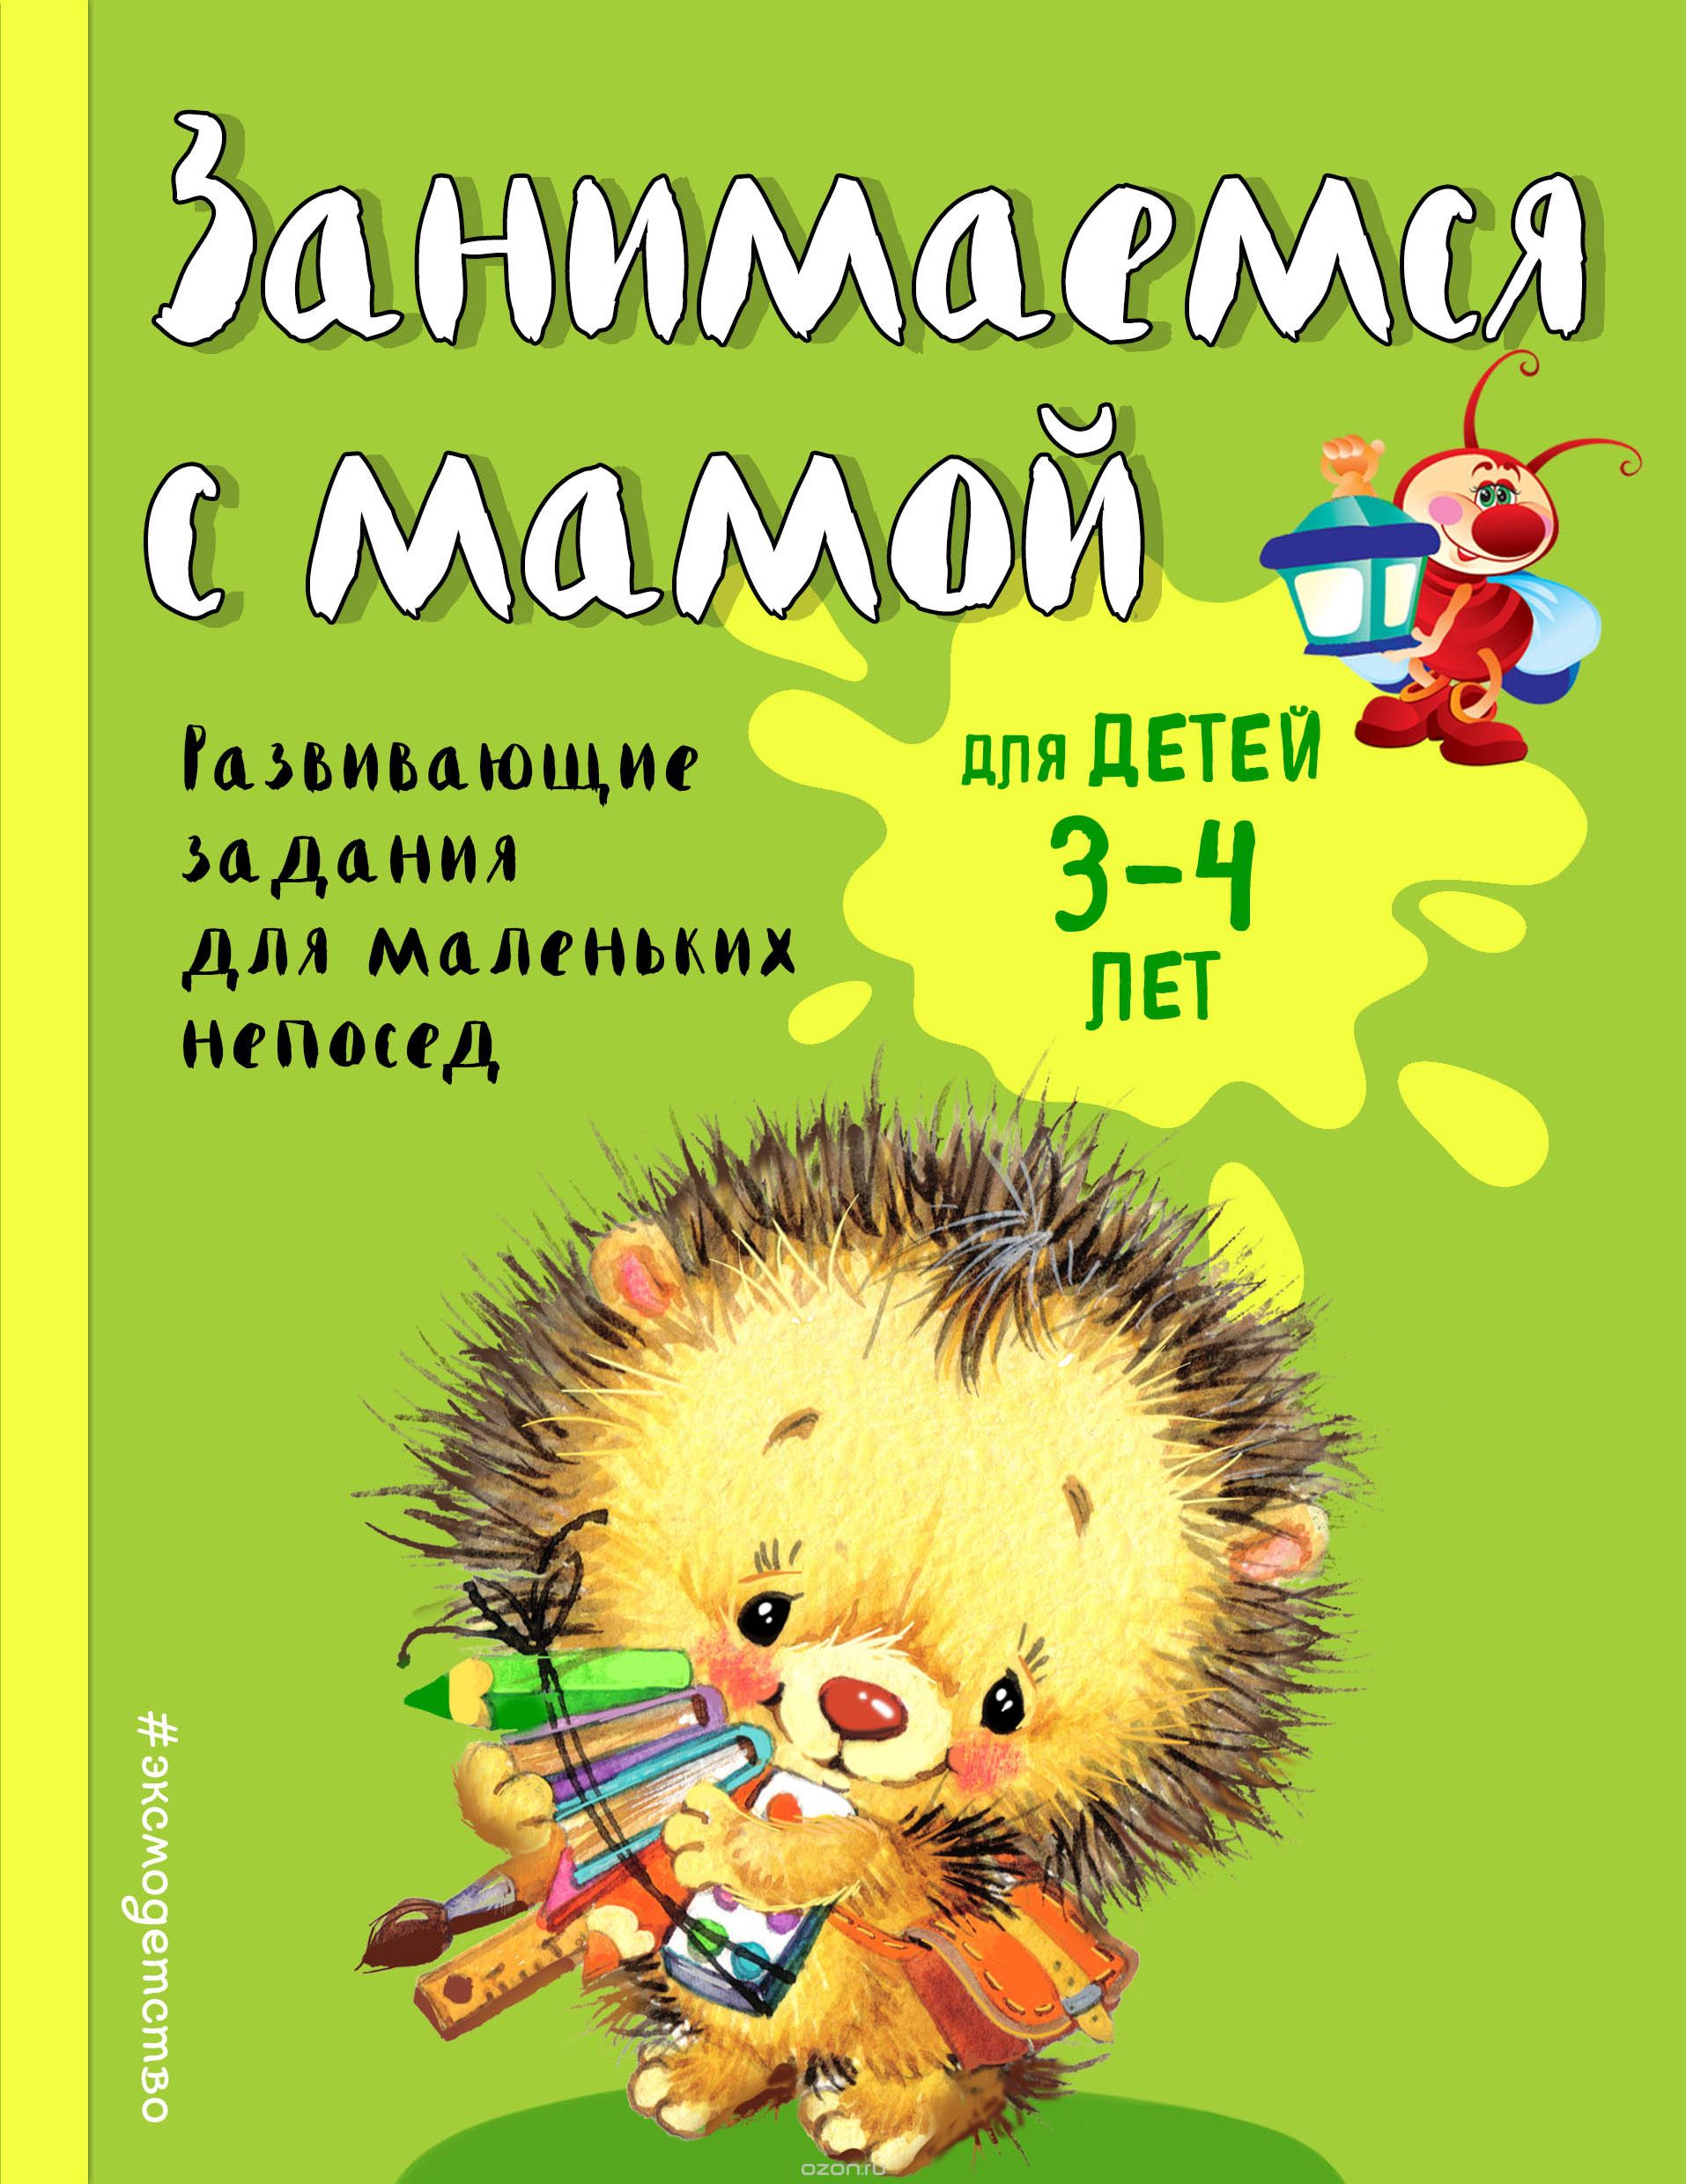 Скачать книгу "Занимаемся с мамой. Для детей 3-4 лет, Смирнова Екатерина Васильевна"